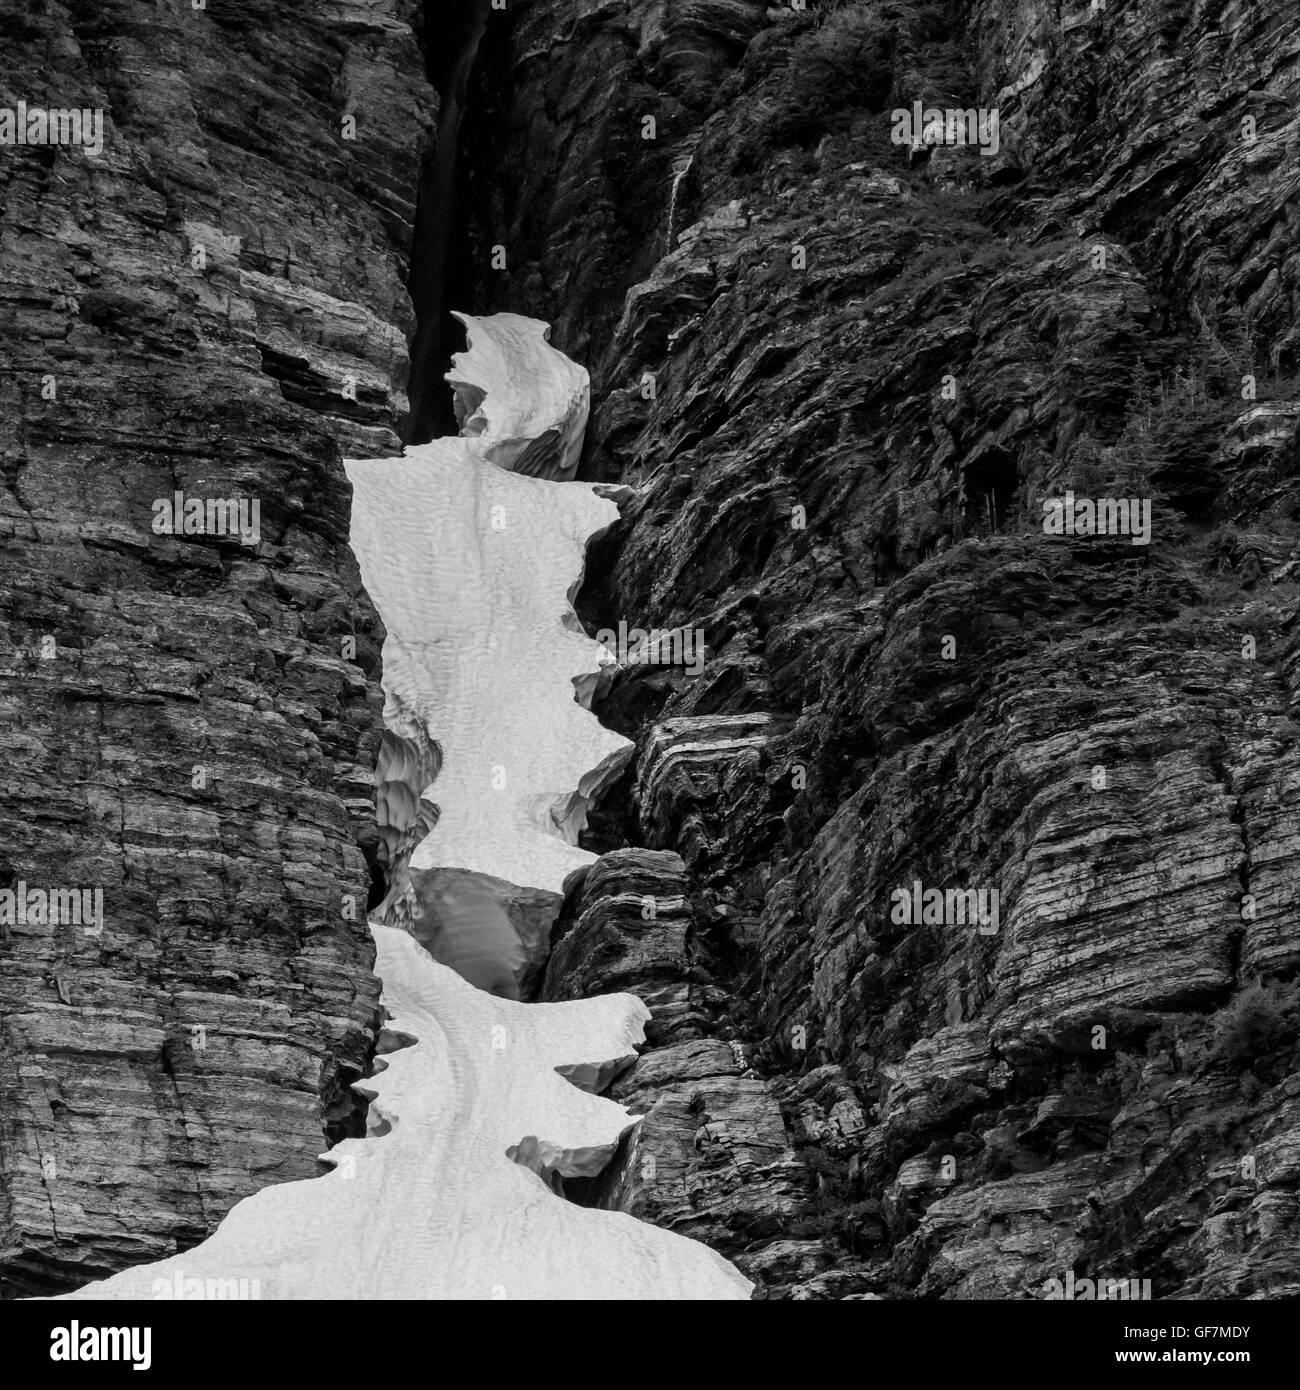 Il ghiaccio sospeso in crepaccio roccioso in bianco e nero Foto Stock